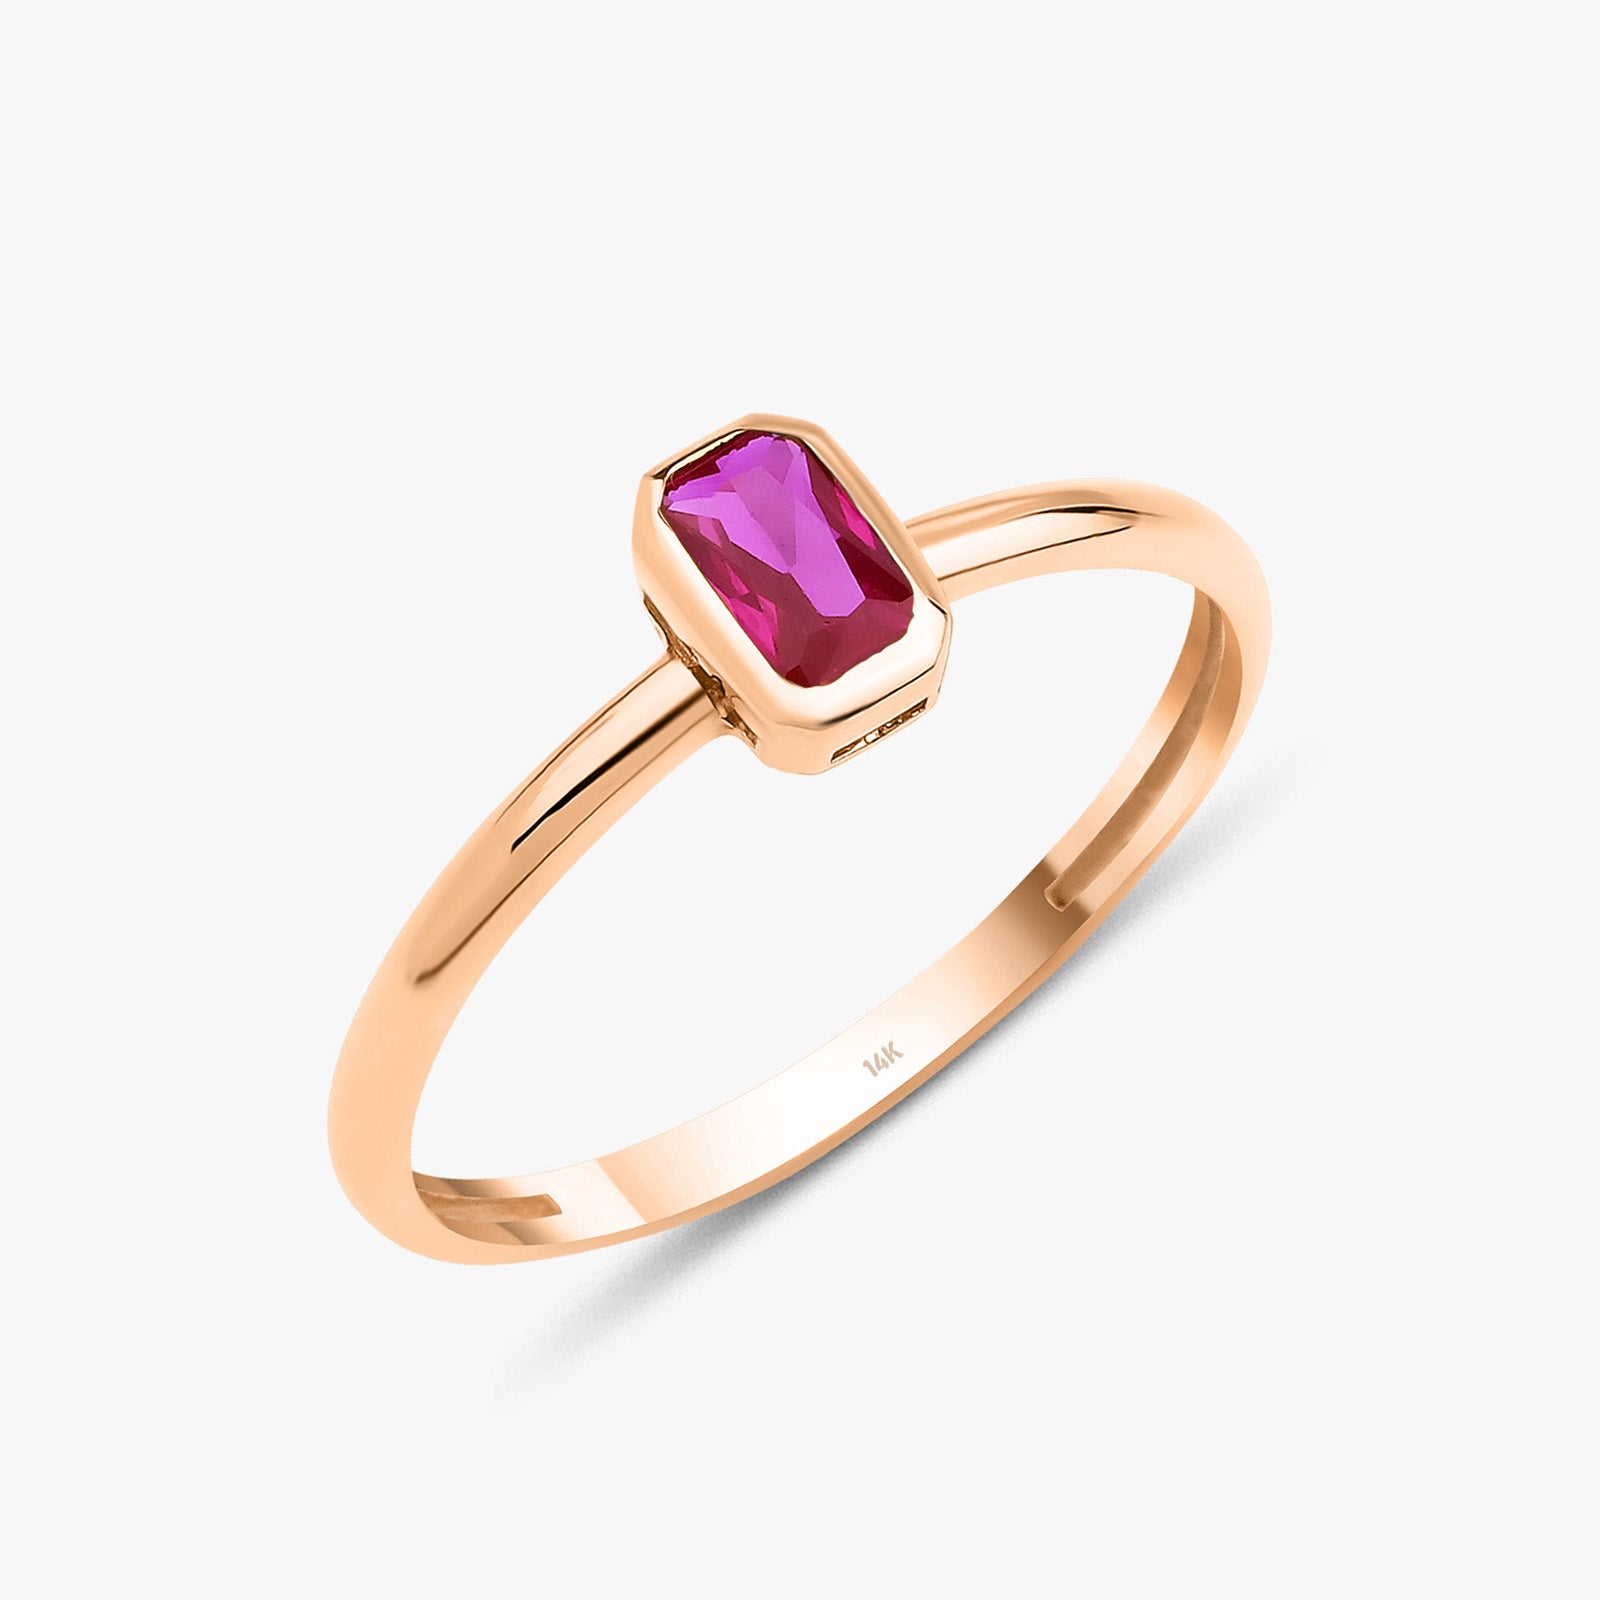 Emerald Cut Red Gemstone Ring in 14K Gold